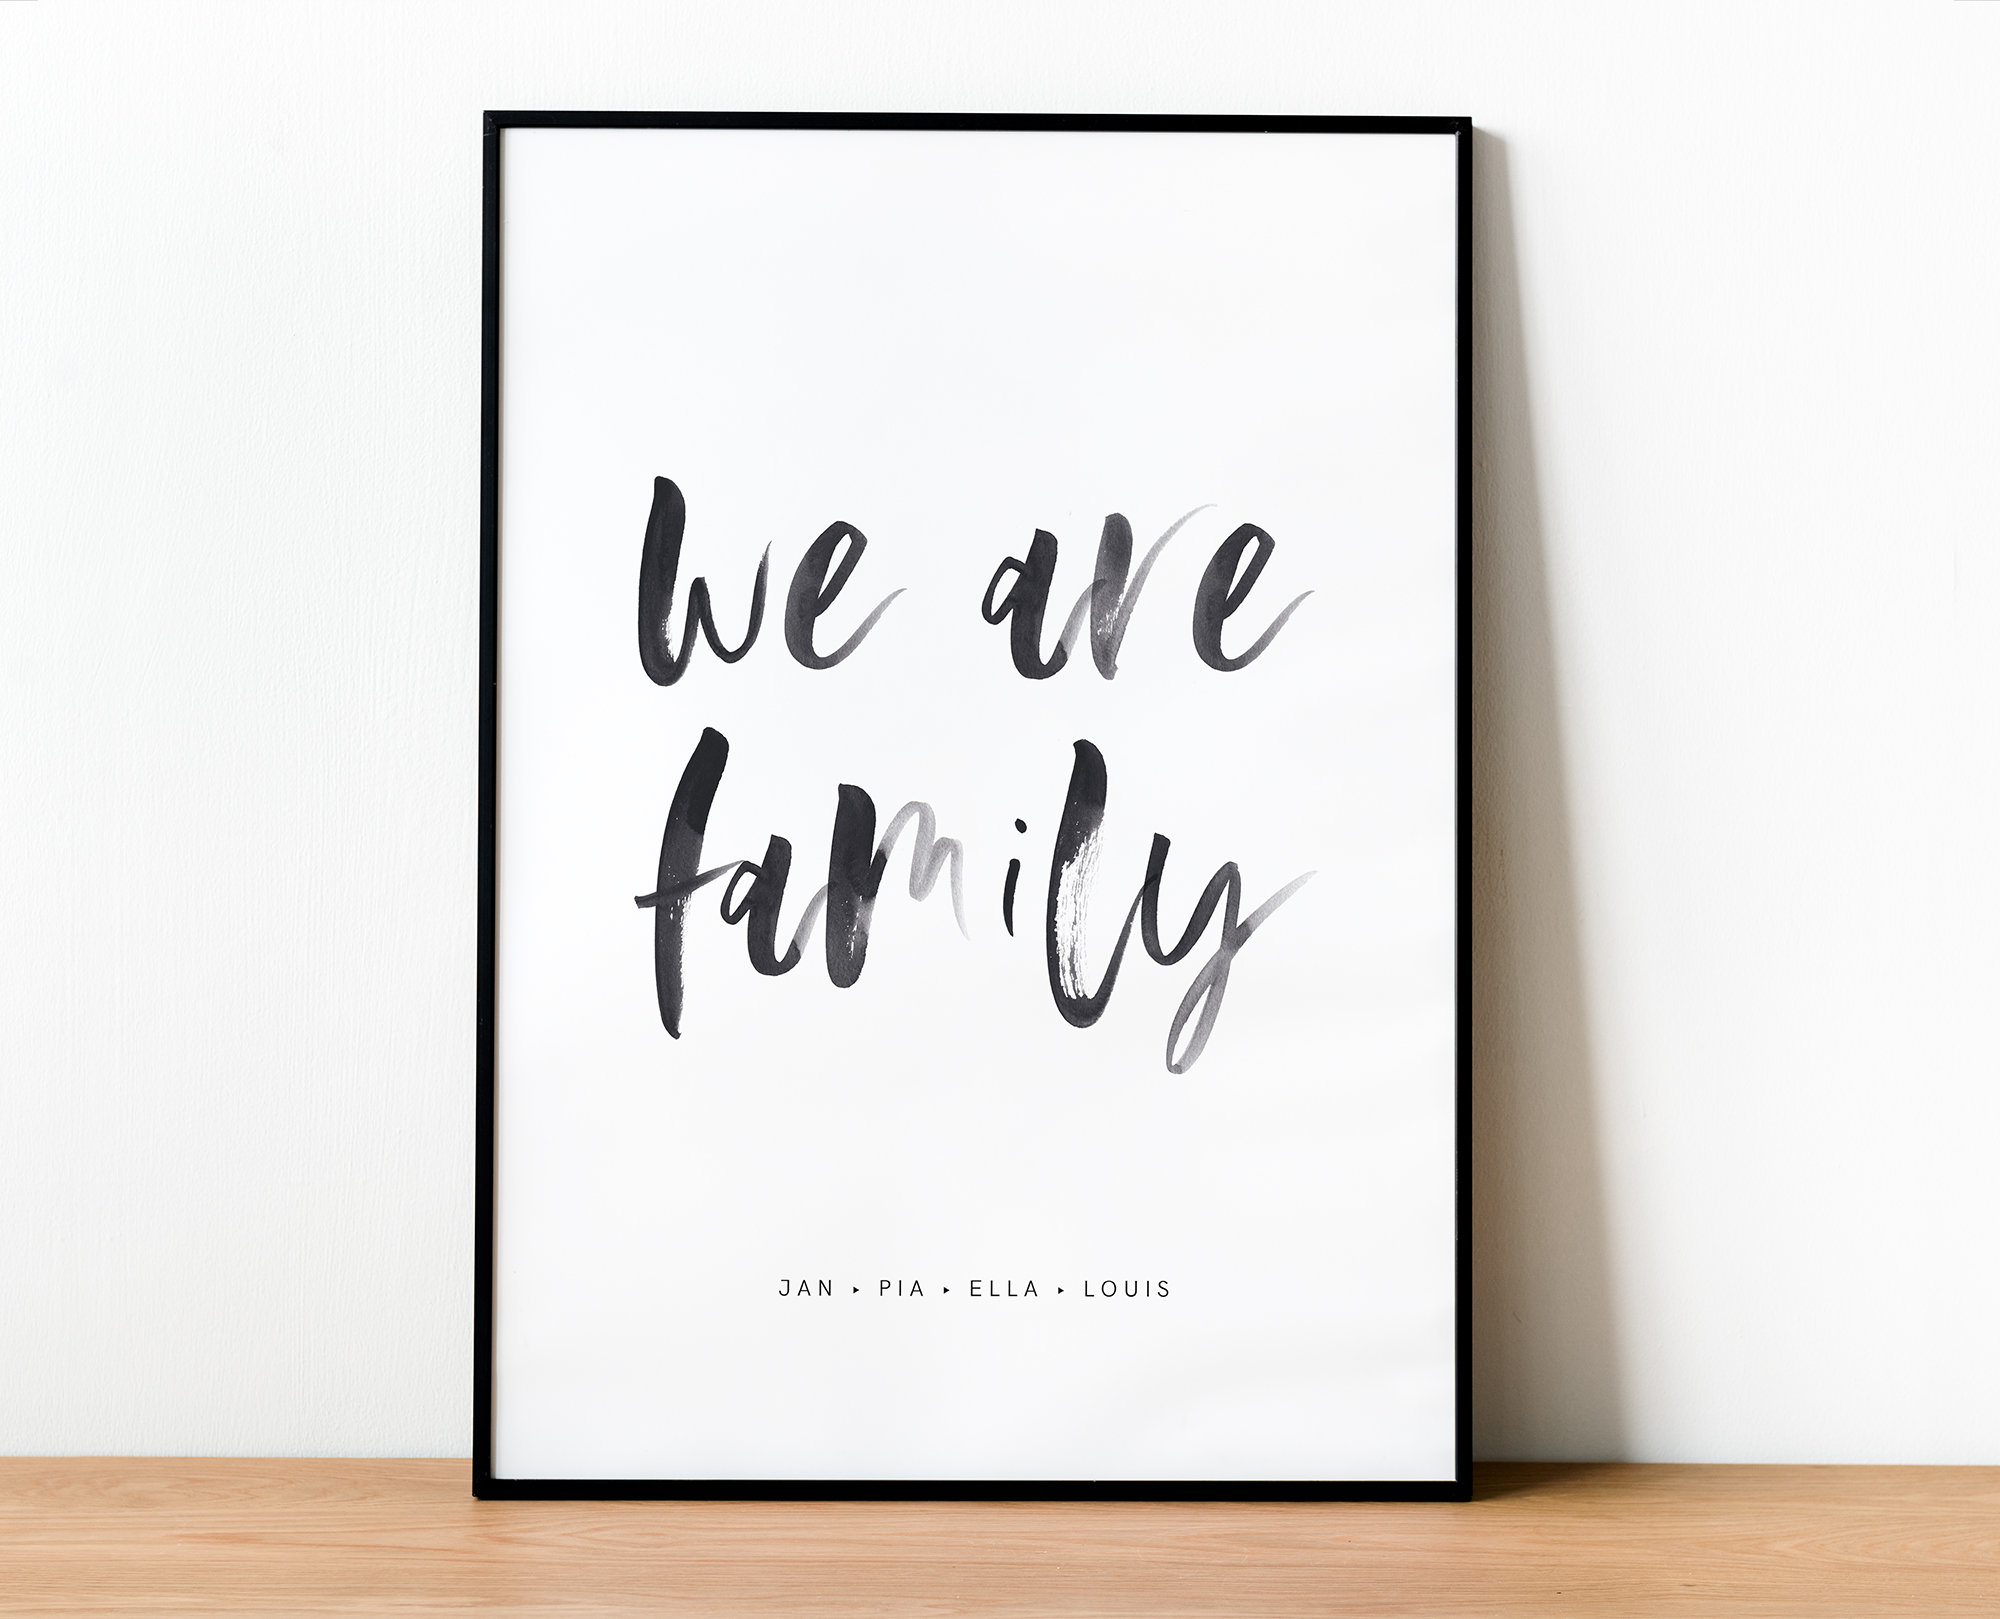 We are a family - .de